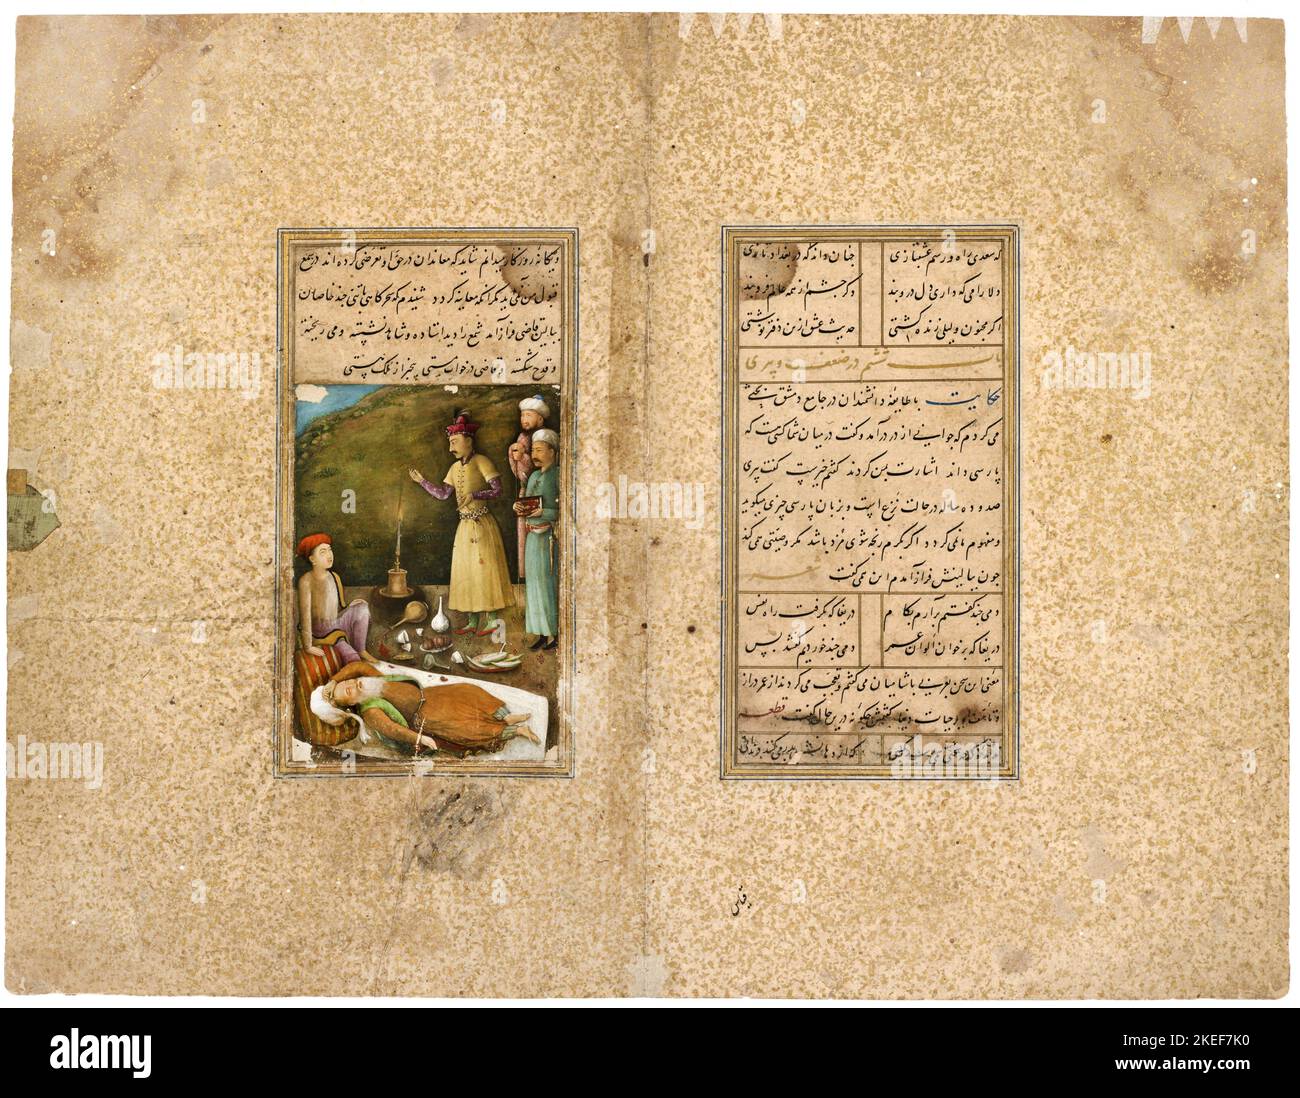 AQA Mirak, Un manuscrit du Gulistan; sa’di dans un jardin de roses; le Qazi de Hamadan dans un État ivre; Circa 1468-1645, Freer Gallery of Art, WASHIN Banque D'Images